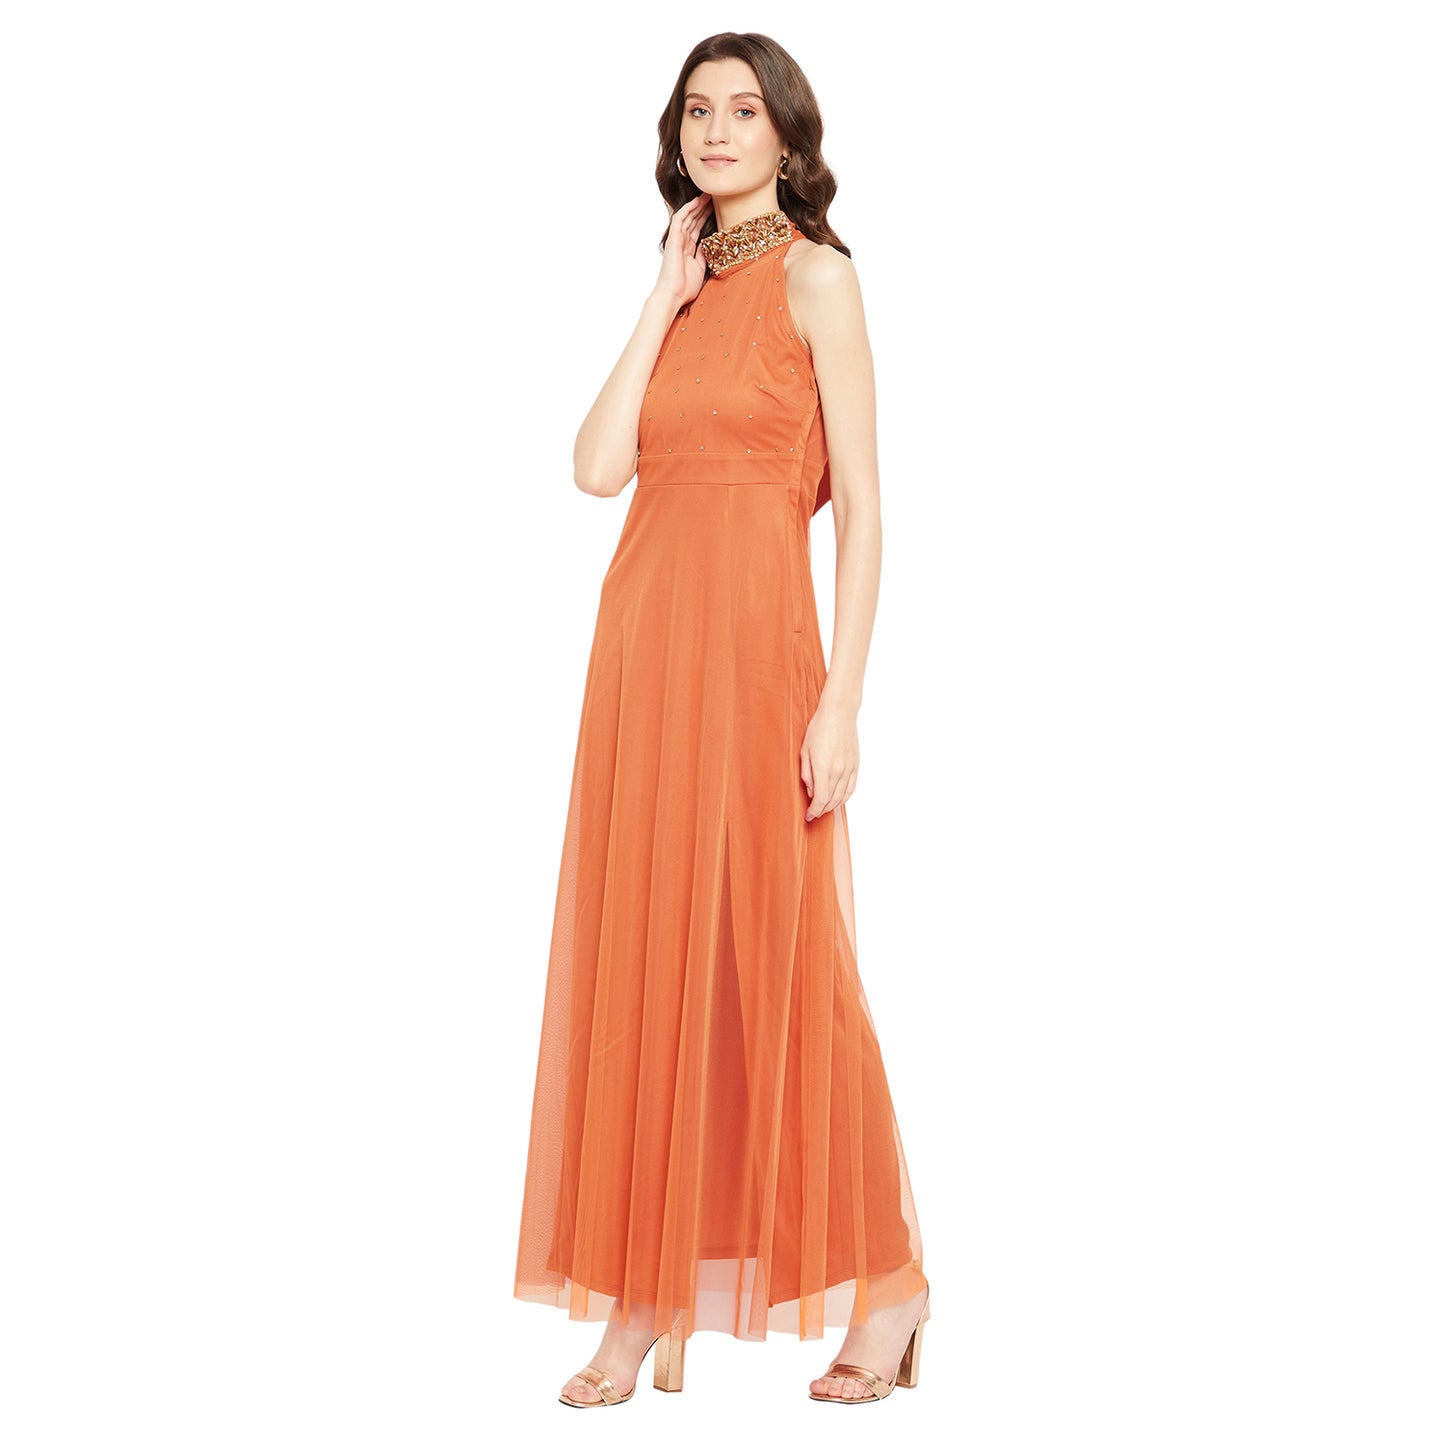 LY2 Embellished Orange long Dress with Side slit